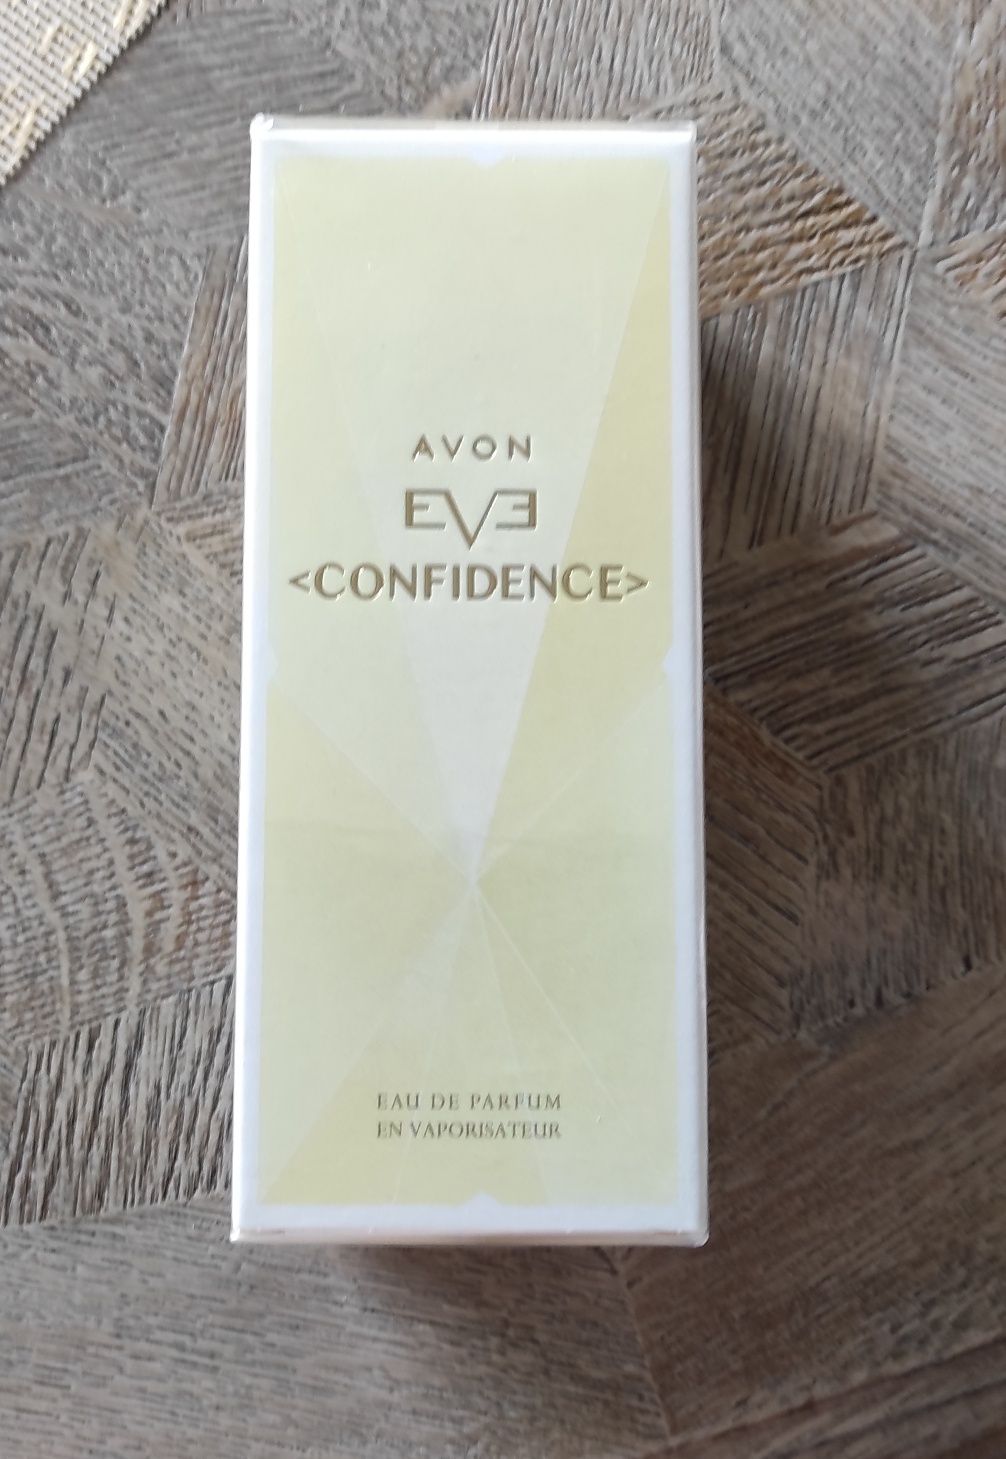 Avon EVE Confidence 100ml